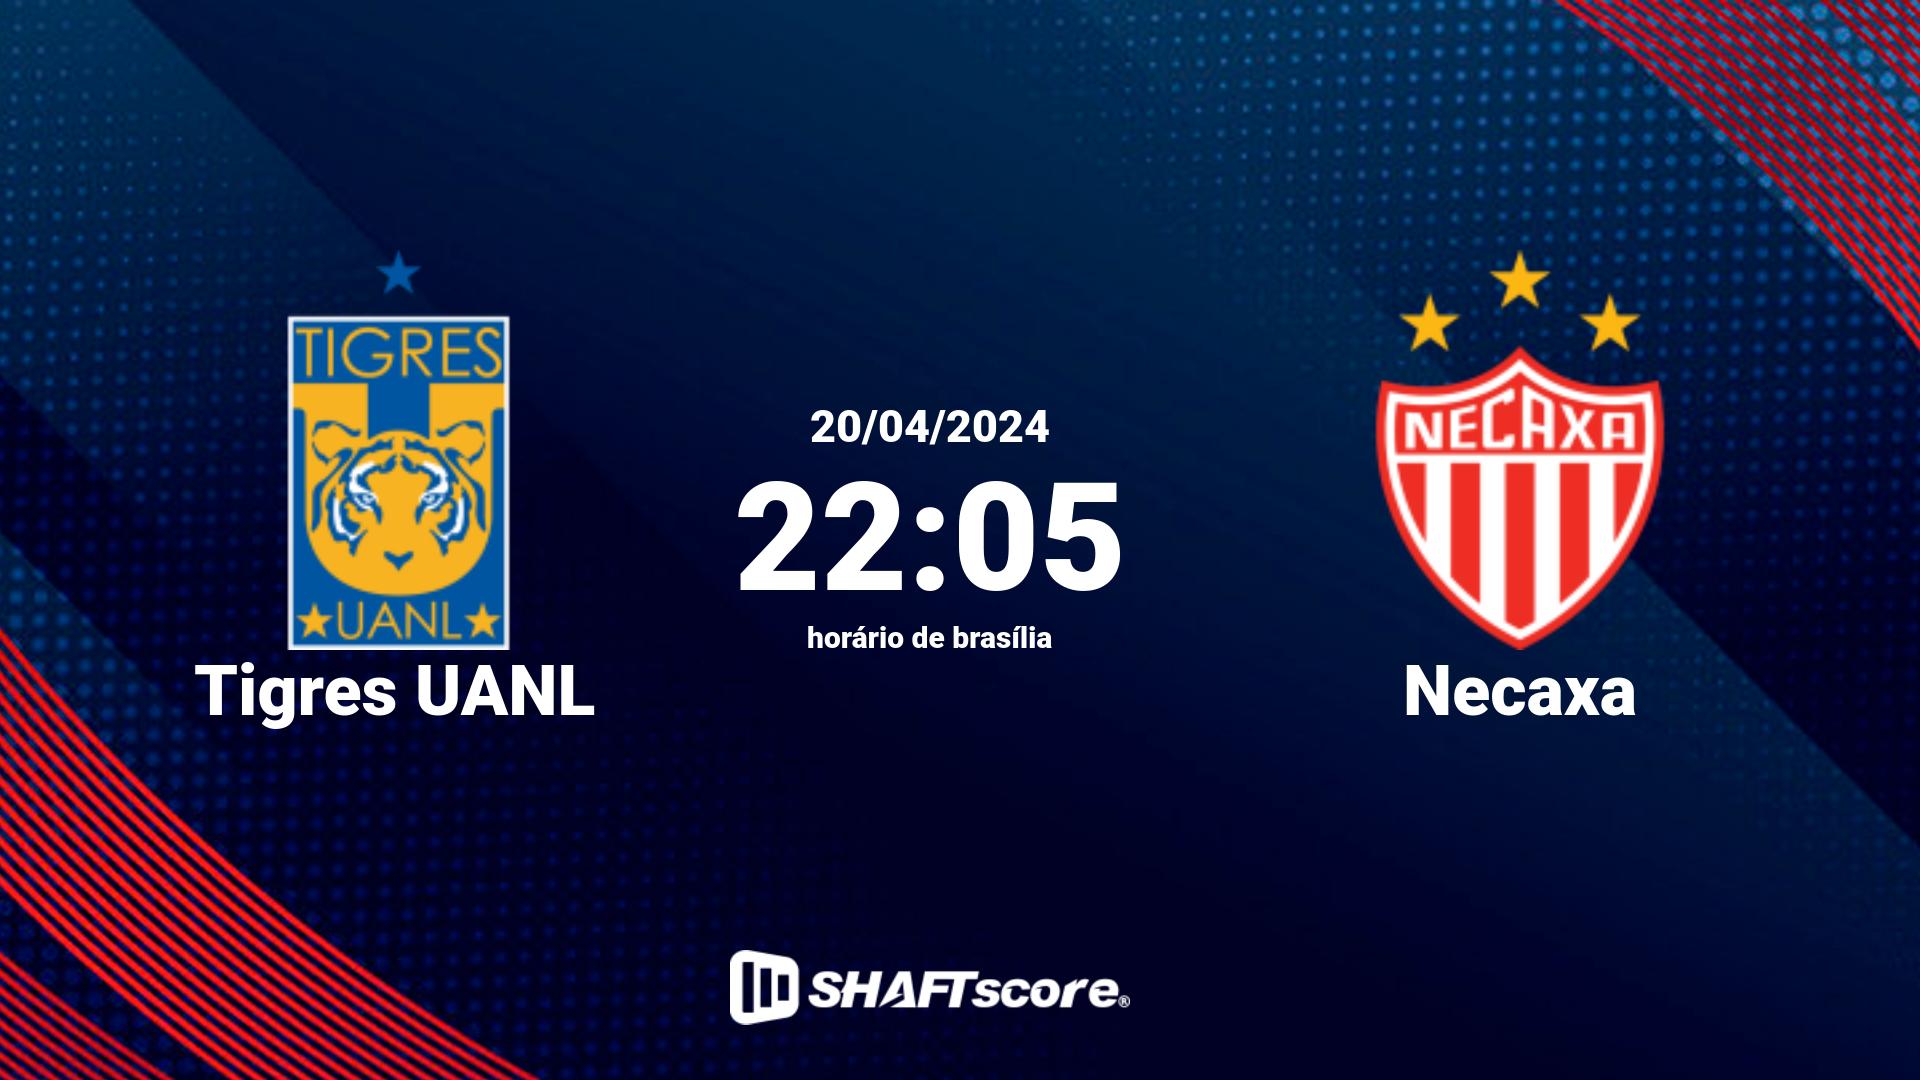 Estatísticas do jogo Tigres UANL vs Necaxa 20.04 22:05